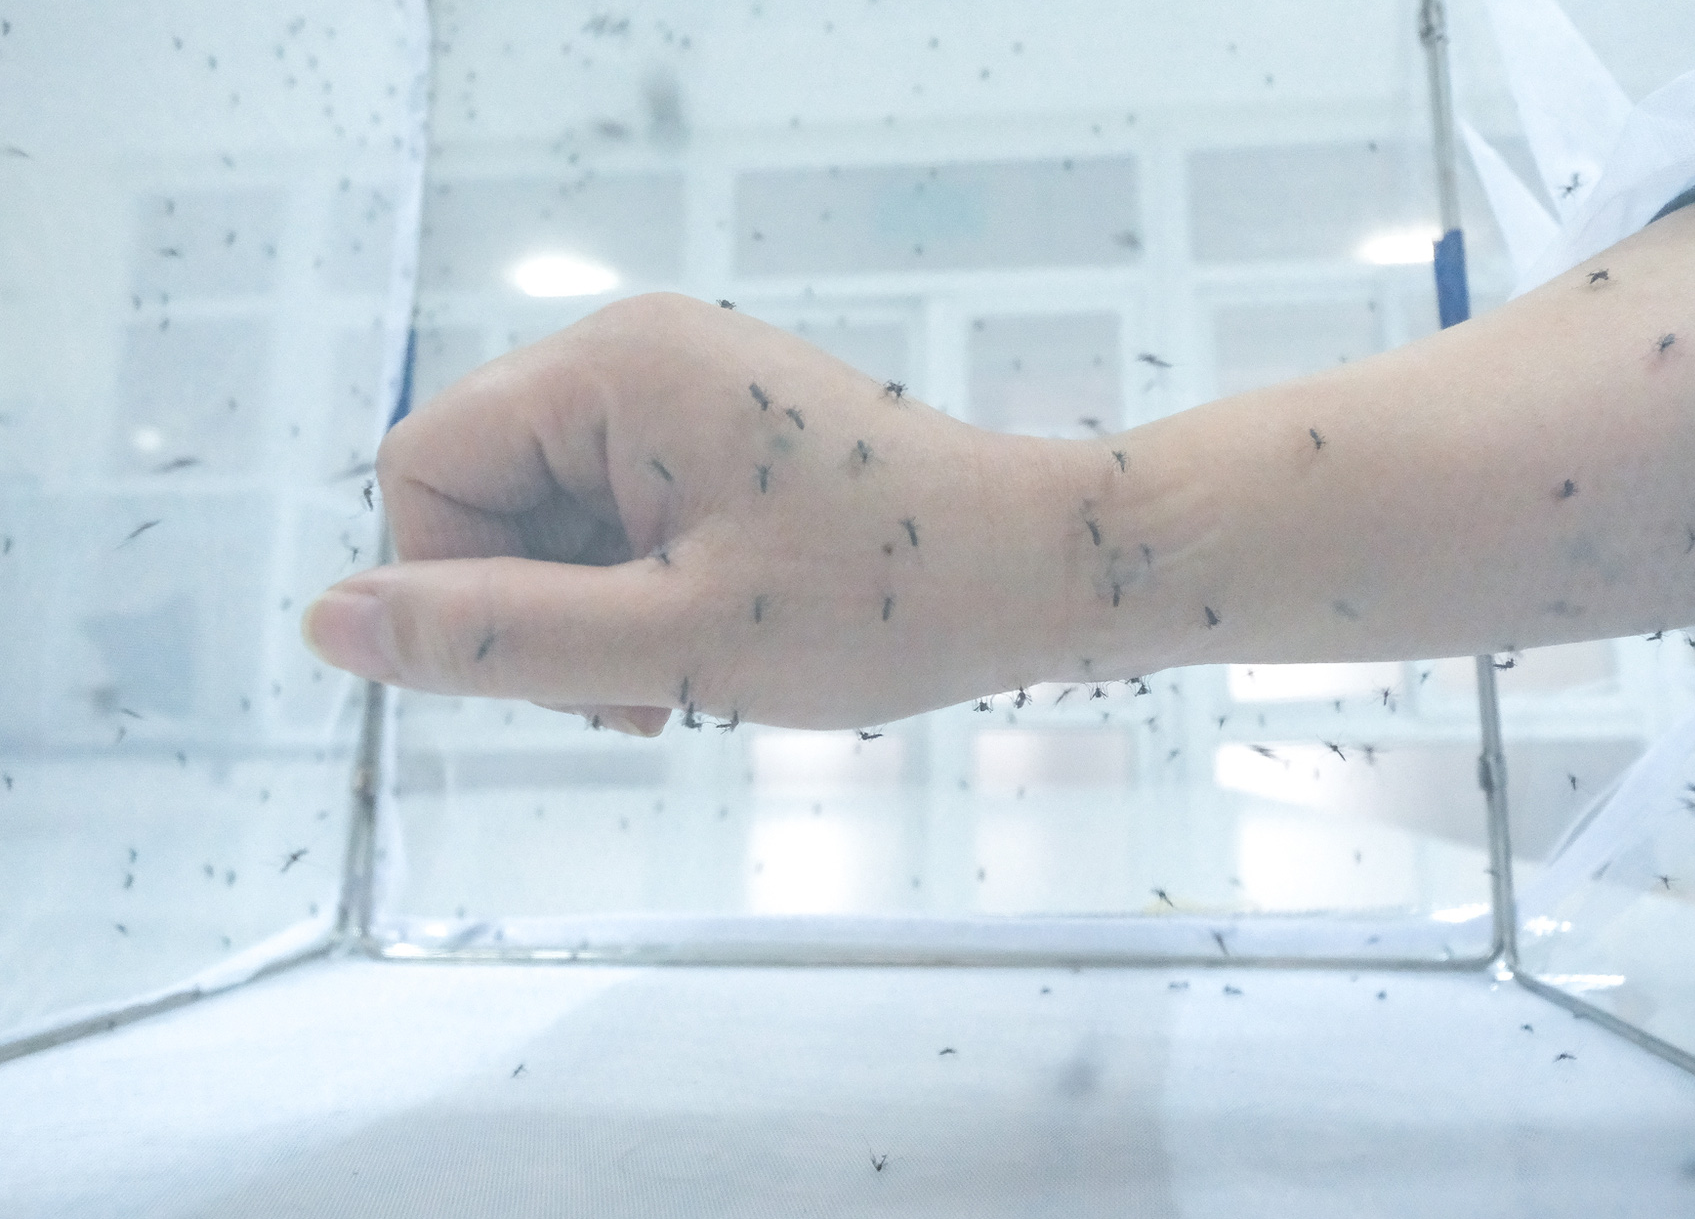 Cán bộ y tế cho muỗi đốt để phục vụ nghiên cứu tại Viện Sốt rét - Ký sinh trùng, Côn trùng trung ương - Ảnh: NAM TRẦN